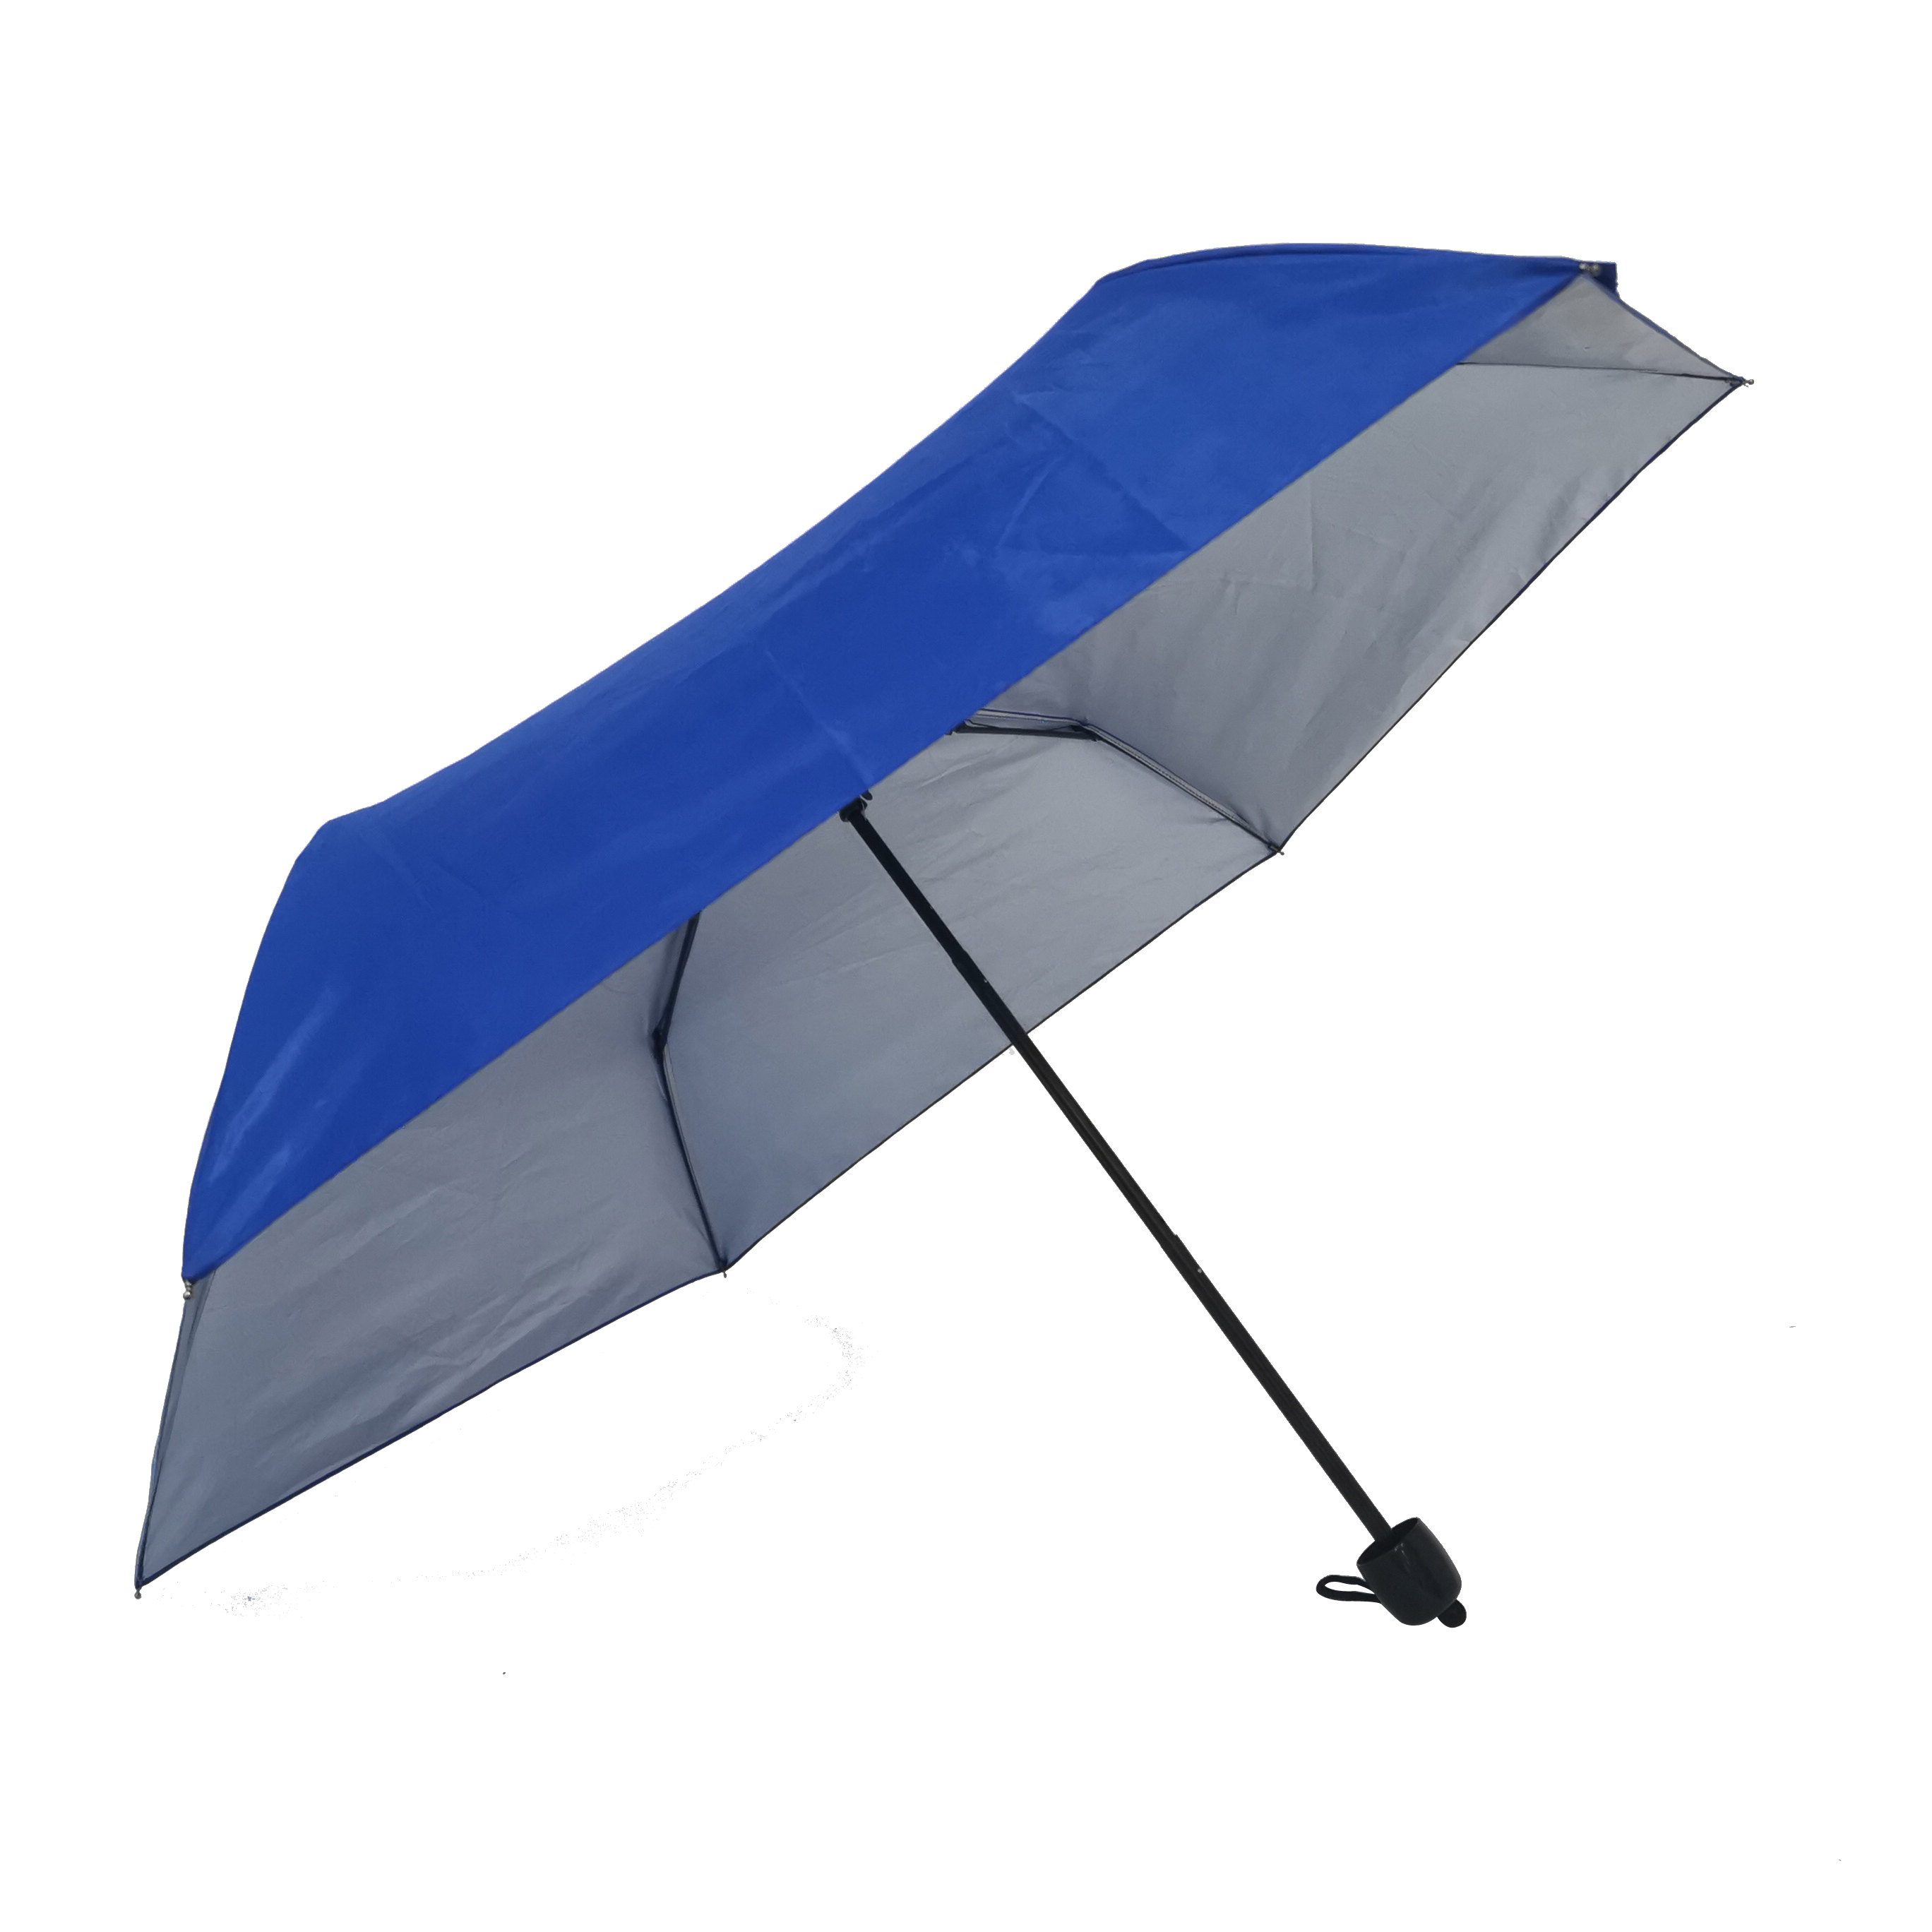 https://www.hodaumbrella.com/automatic-open-manual-close-3-fold-umbrella-product/